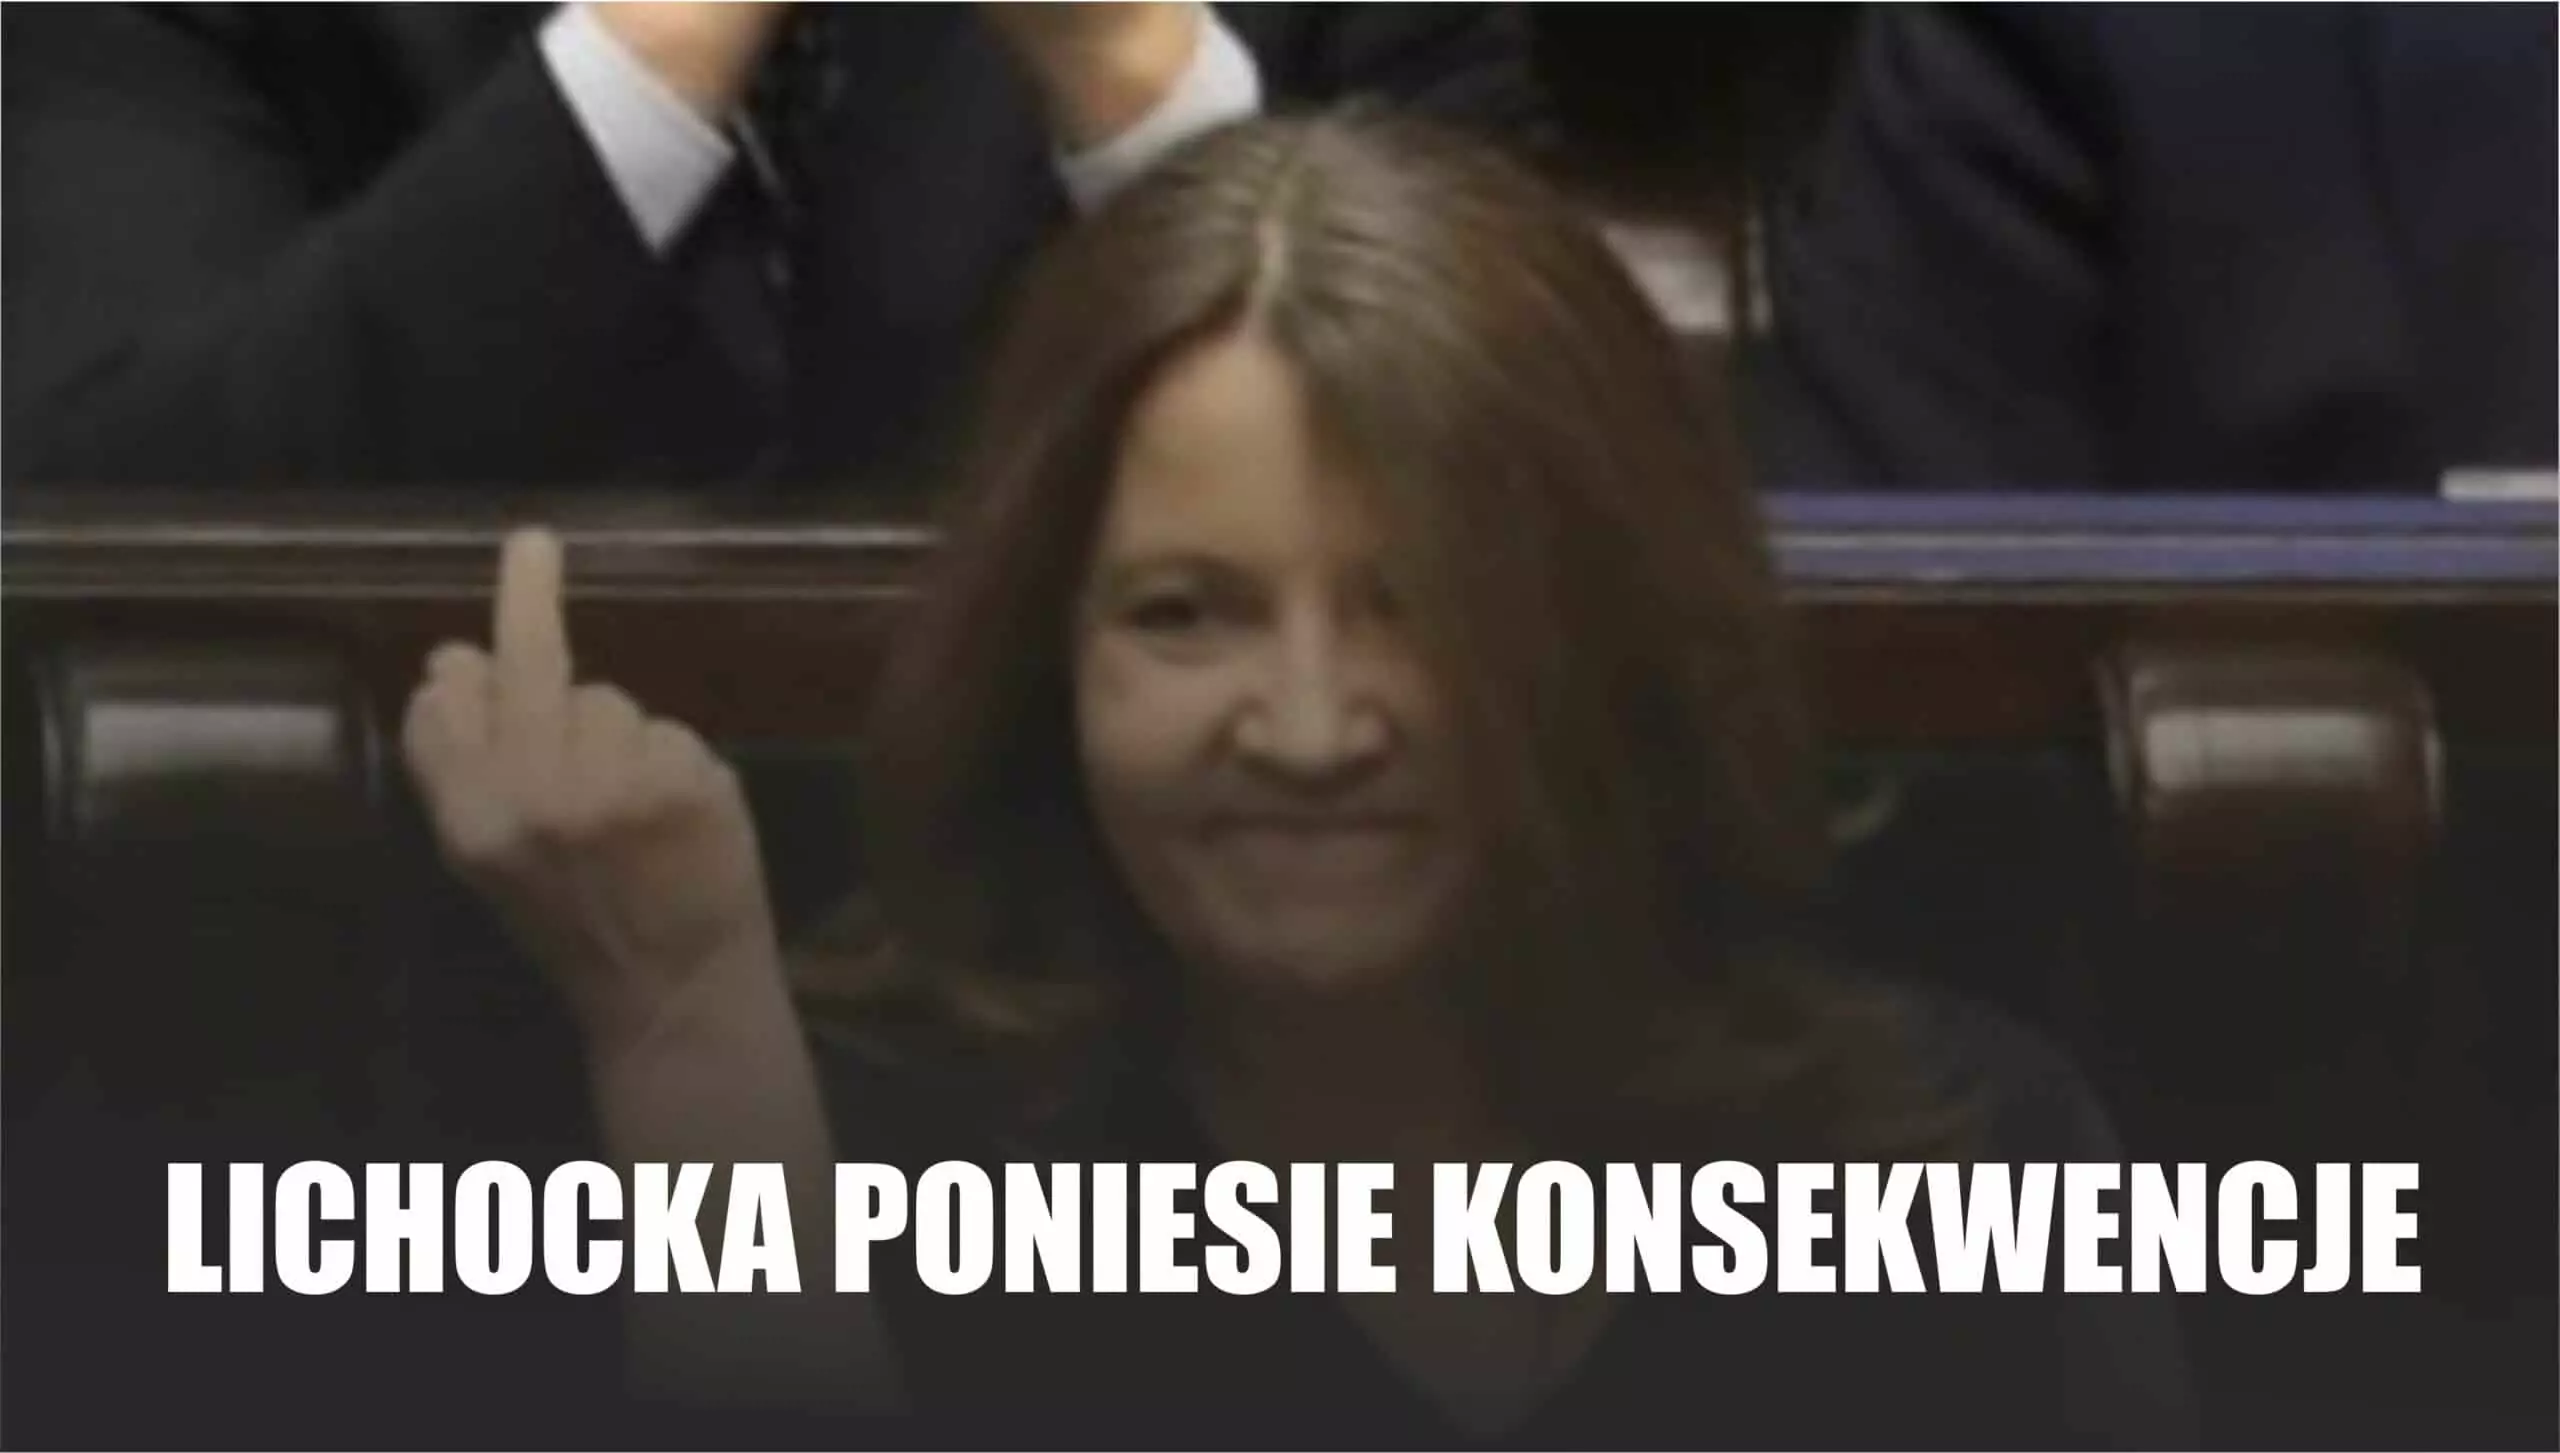 Posłanka Lichocka z PiS za swój gest ,środkowy palec jaki pokazała w Sejmie, poniesie konsekwencje. Tak głoszą najnowsze wieści z Nowogrodzkiej